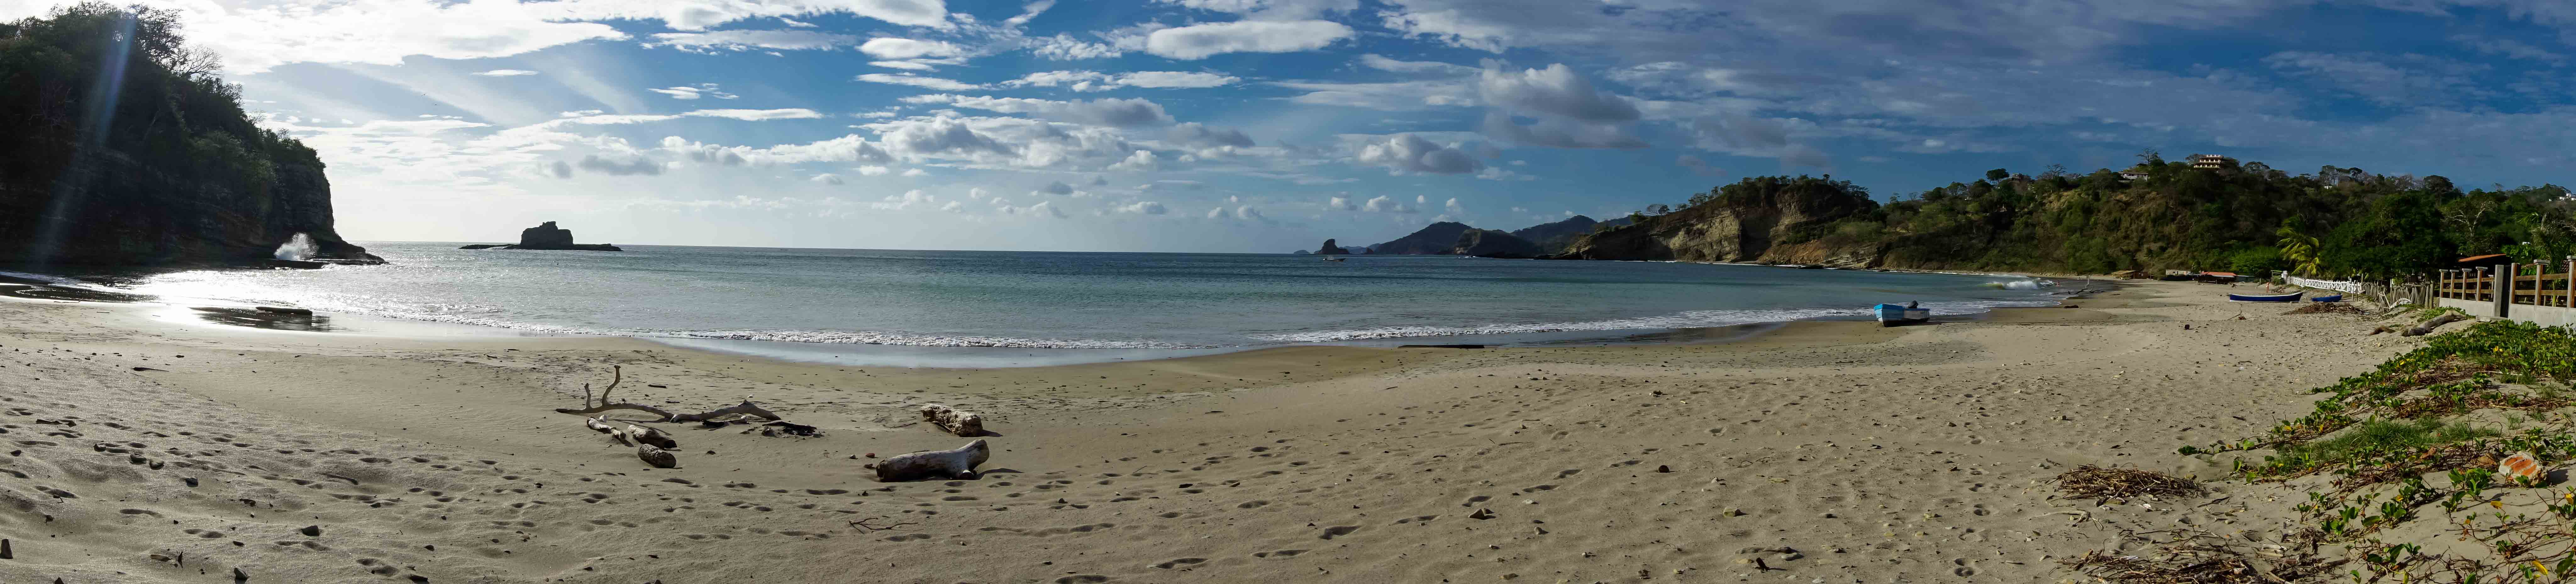 Playa Marsella San Juan del Sur